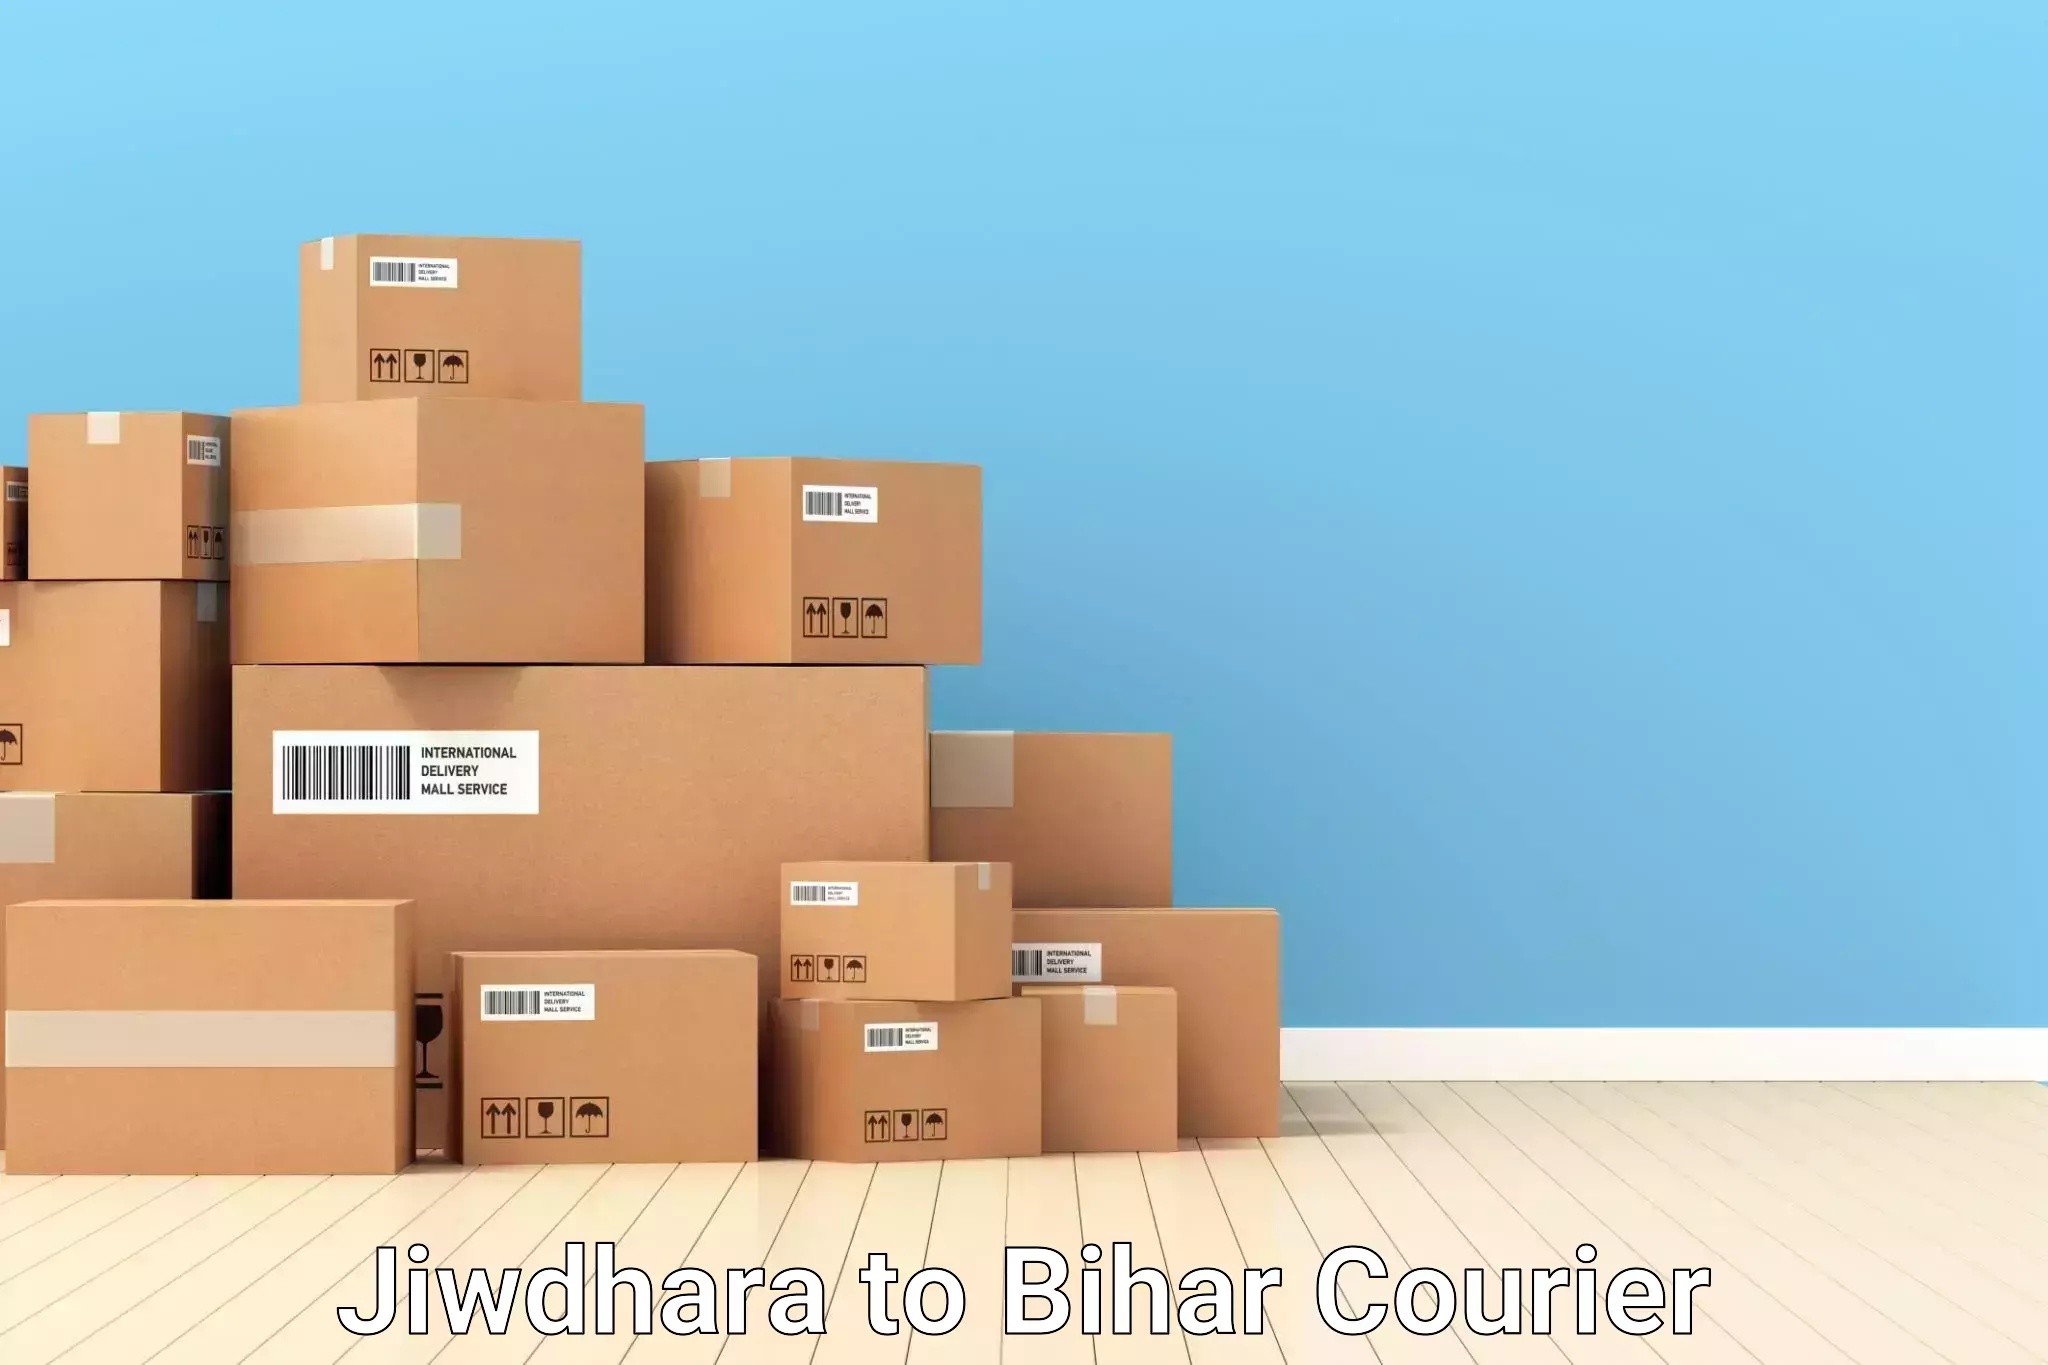 Electronic items luggage shipping in Jiwdhara to Jhajha